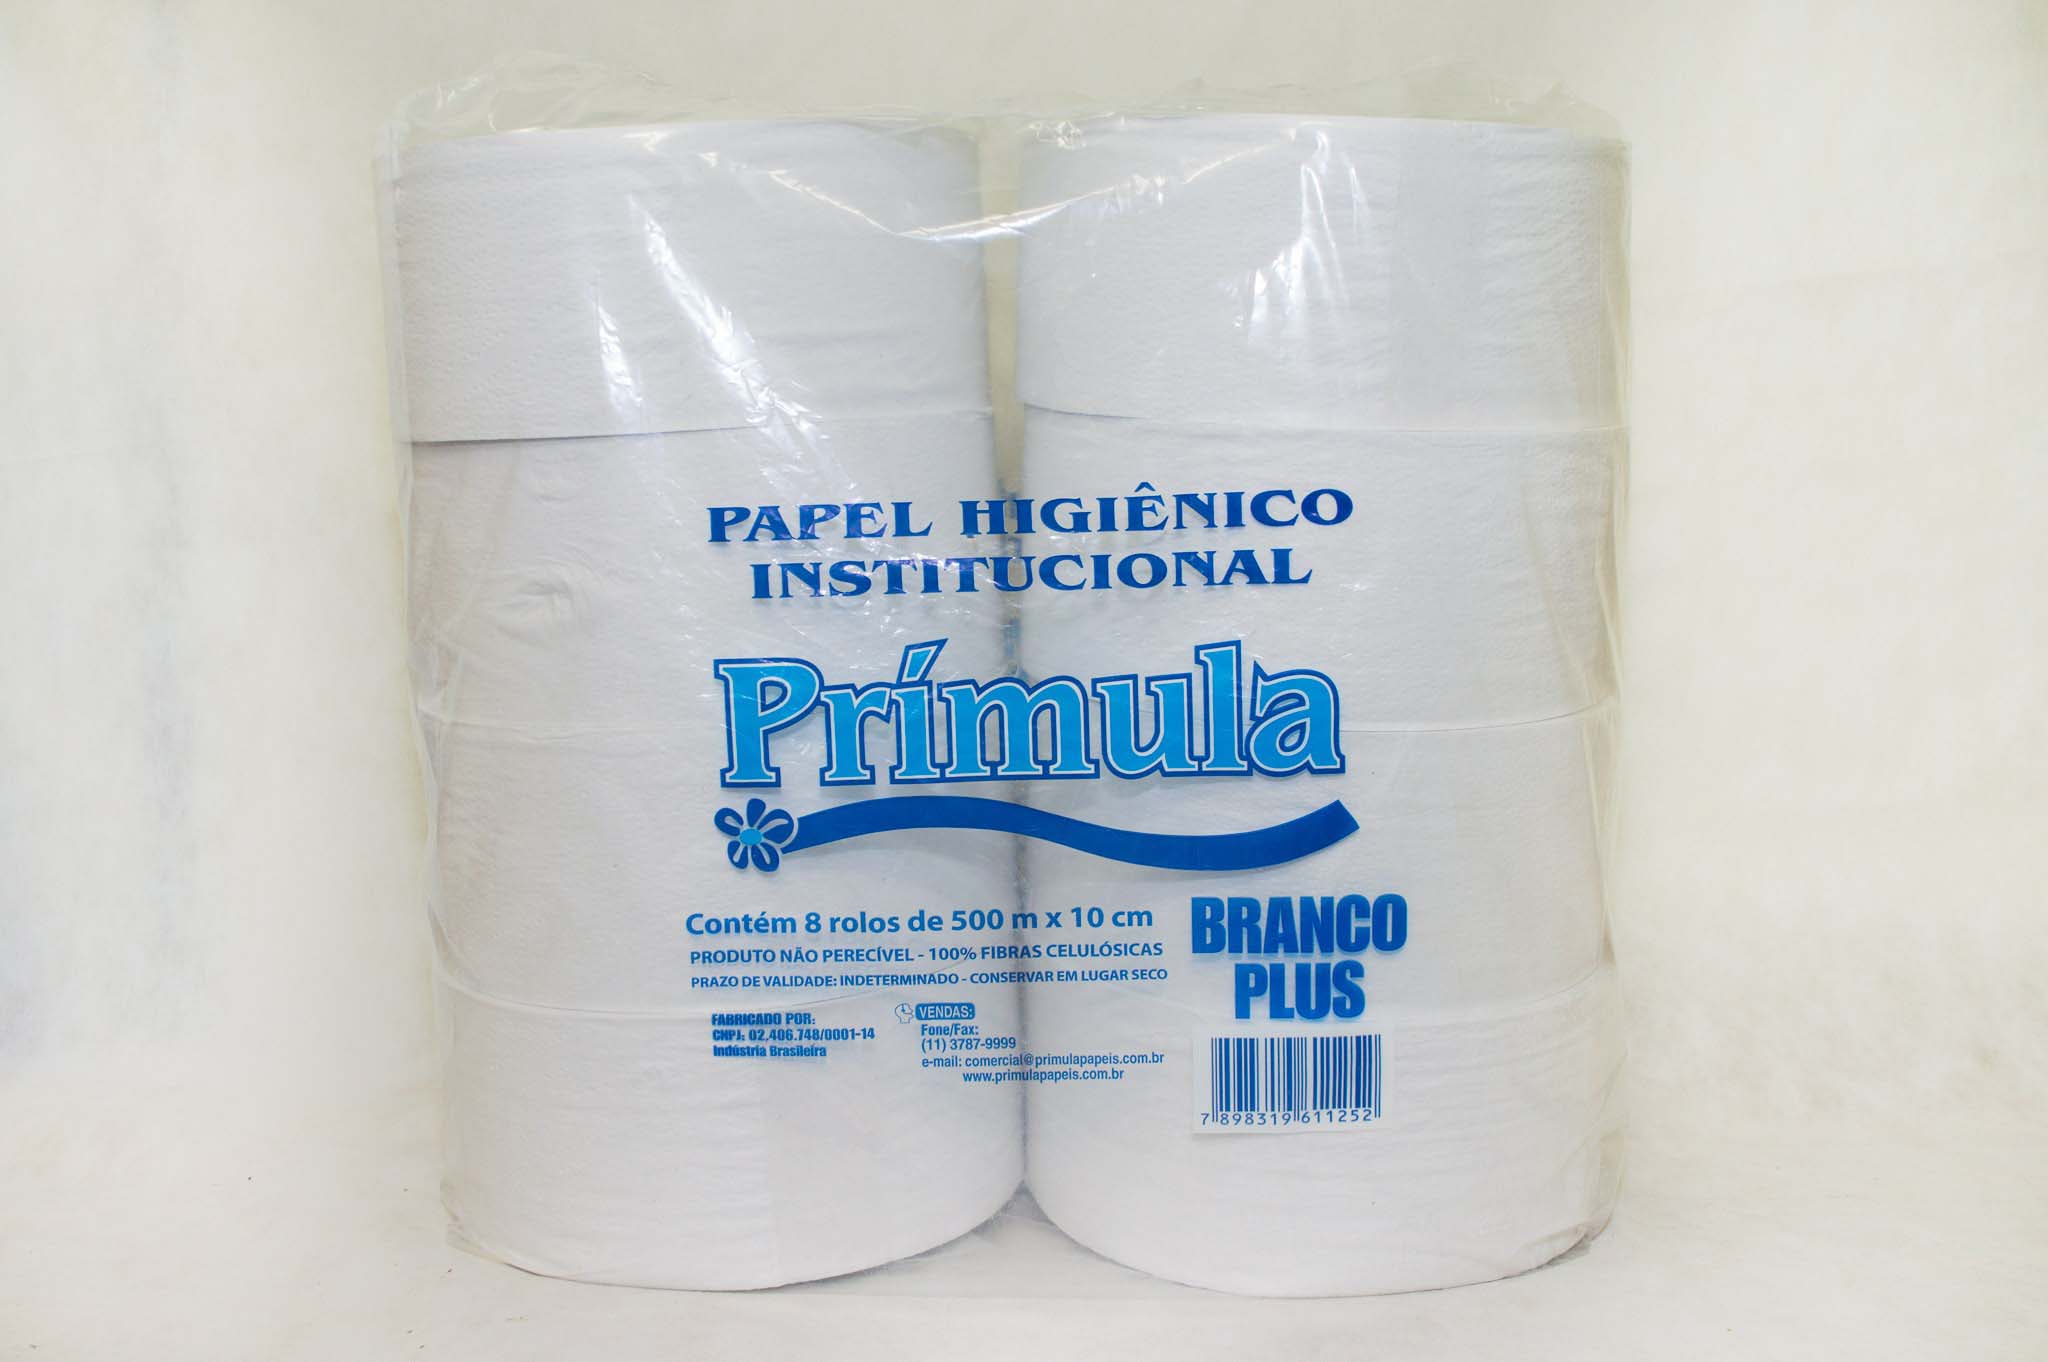 Indústria de papel higiênico